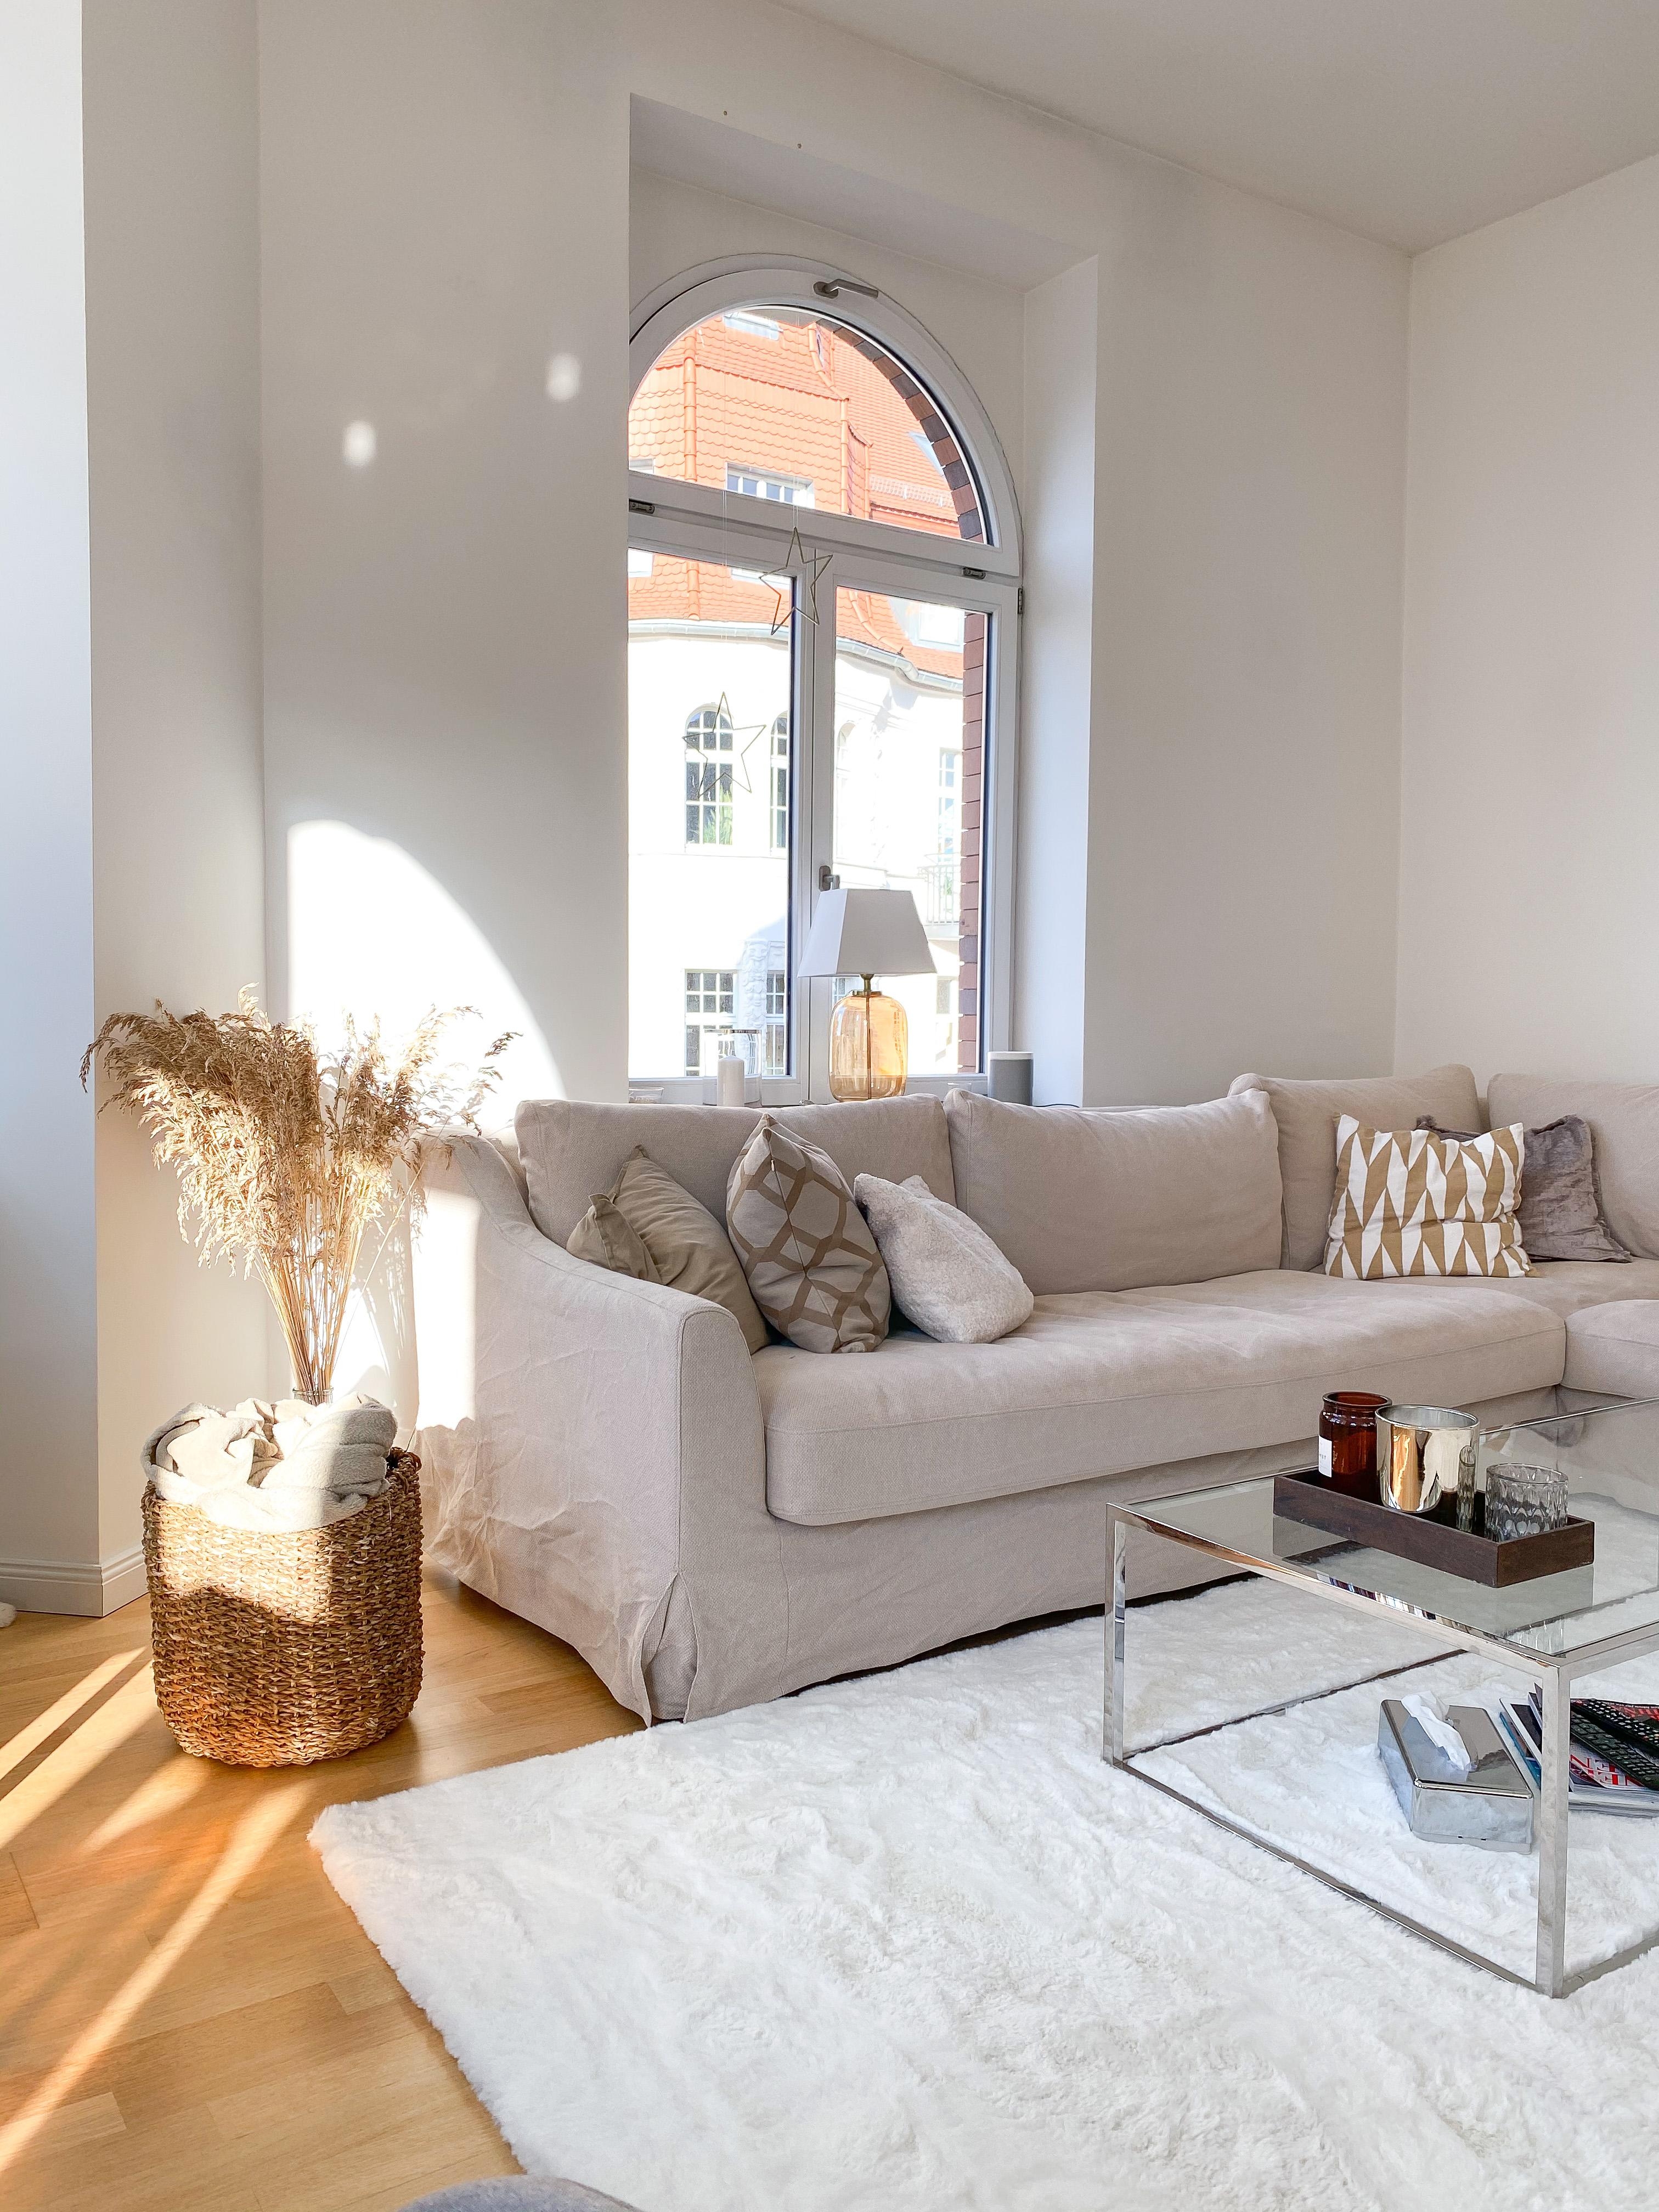 Und jetzt ab auf die Couch mit der Couch! #wohnzimmer #sofa #couch #livingroom #natural #white #light